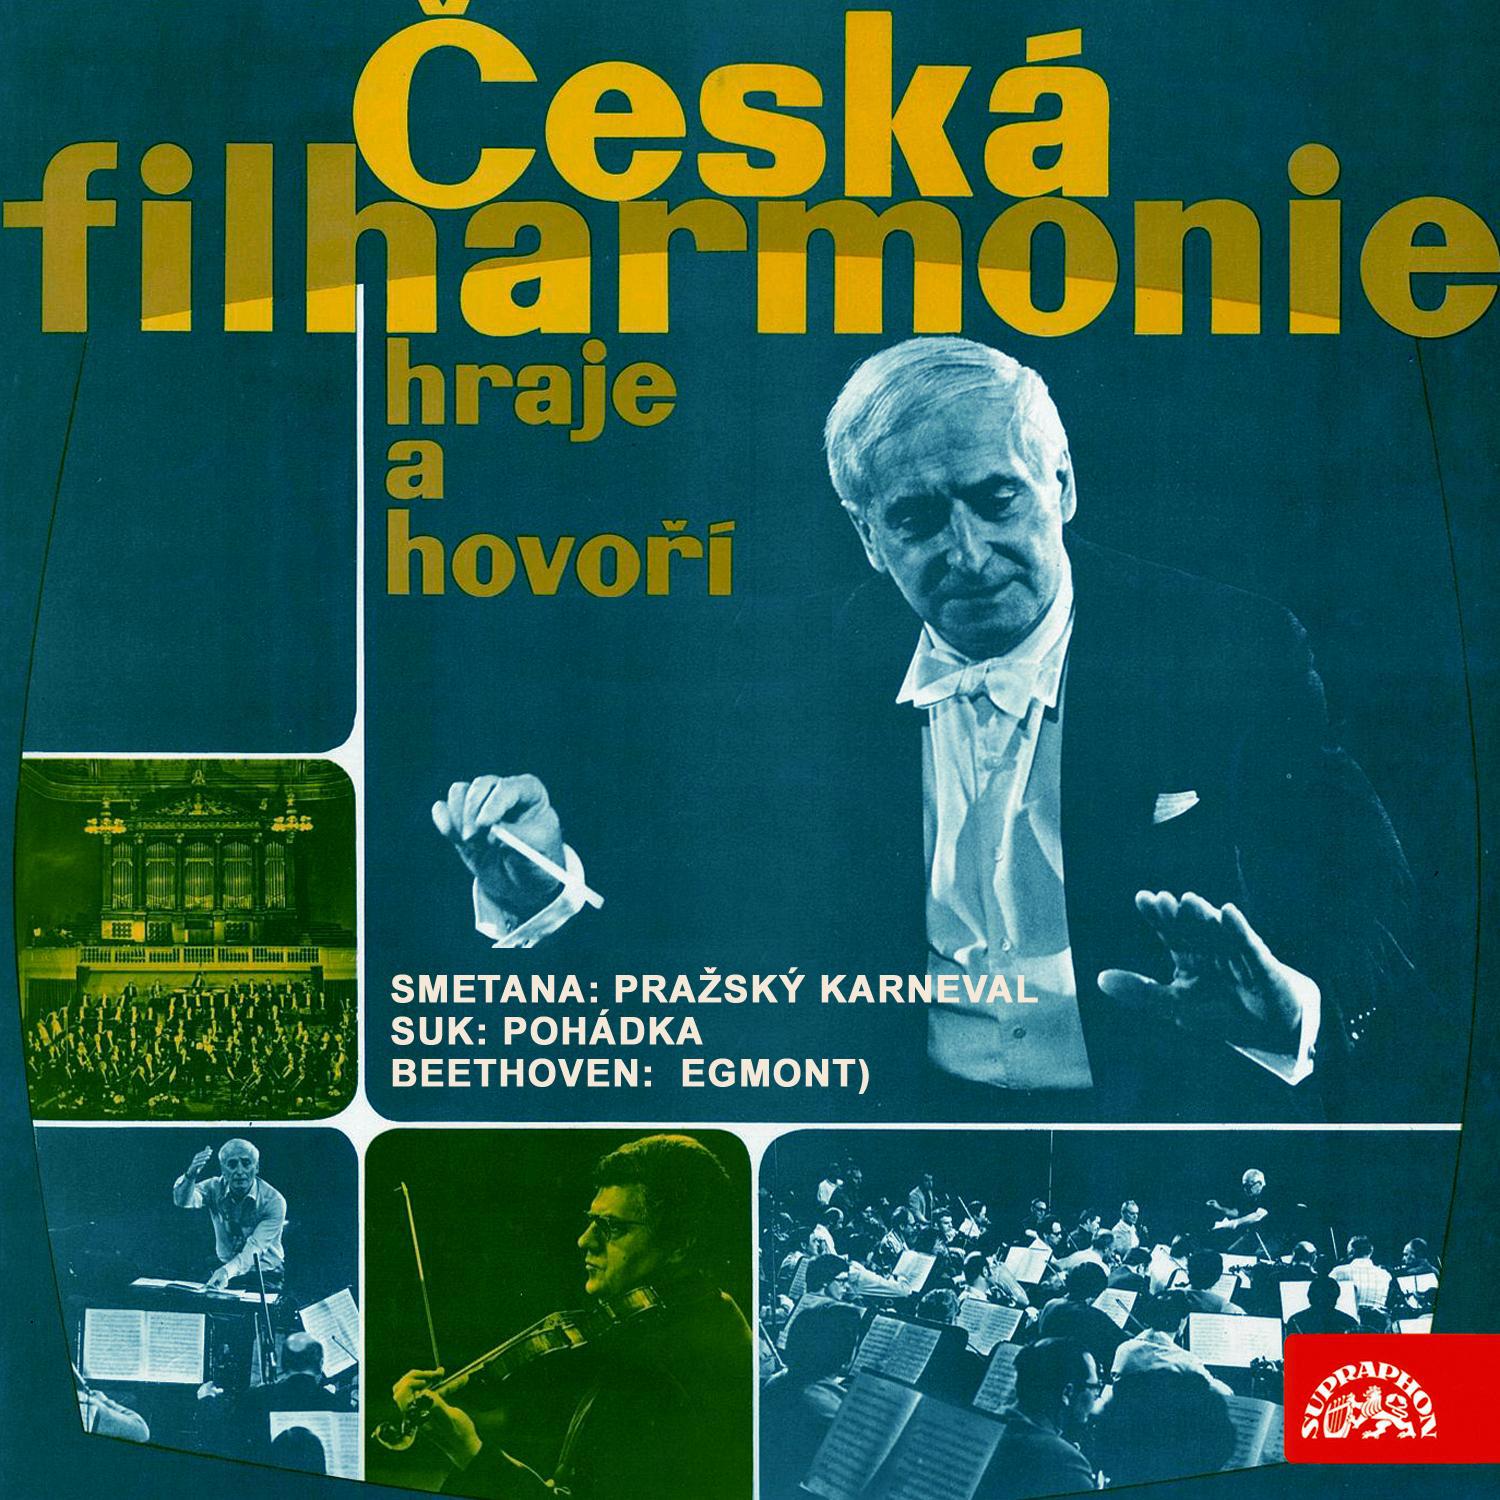 Česká filharmonie hraje a hovoří - Smetana: Pražský karneval - Suk: Pohádka - Beethoven: Egmont专辑